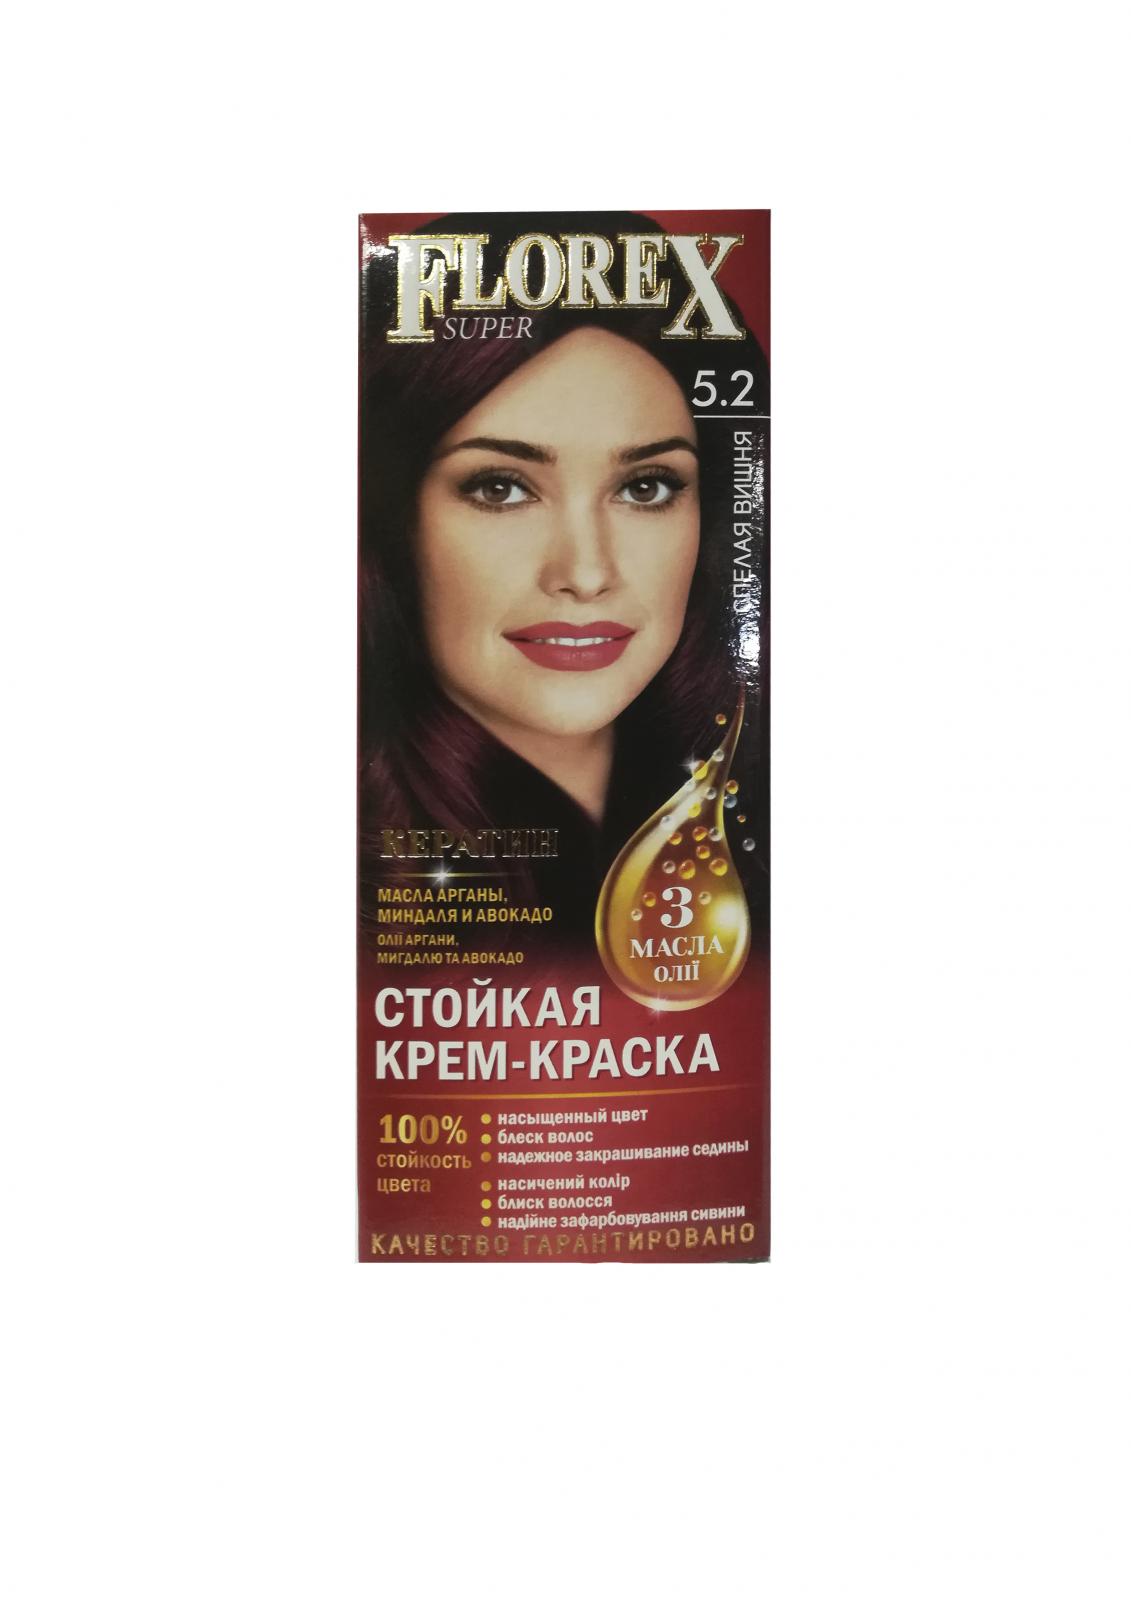 Стойкая крем-краска д/волос "Florex super", тон .5.2 Спелая вишня